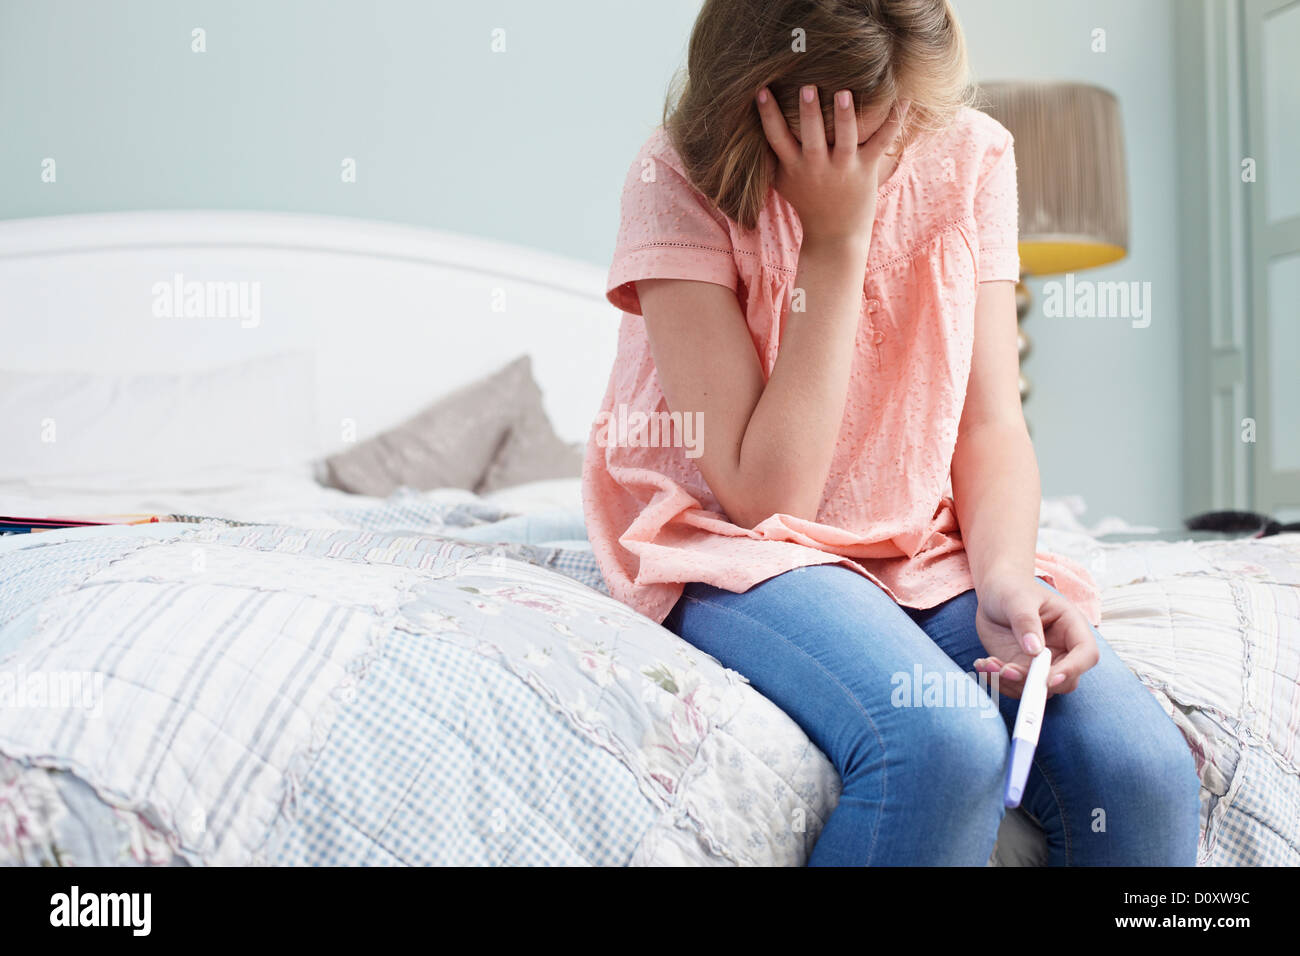 Teenage girl sitting on bed avec test de grossesse Banque D'Images